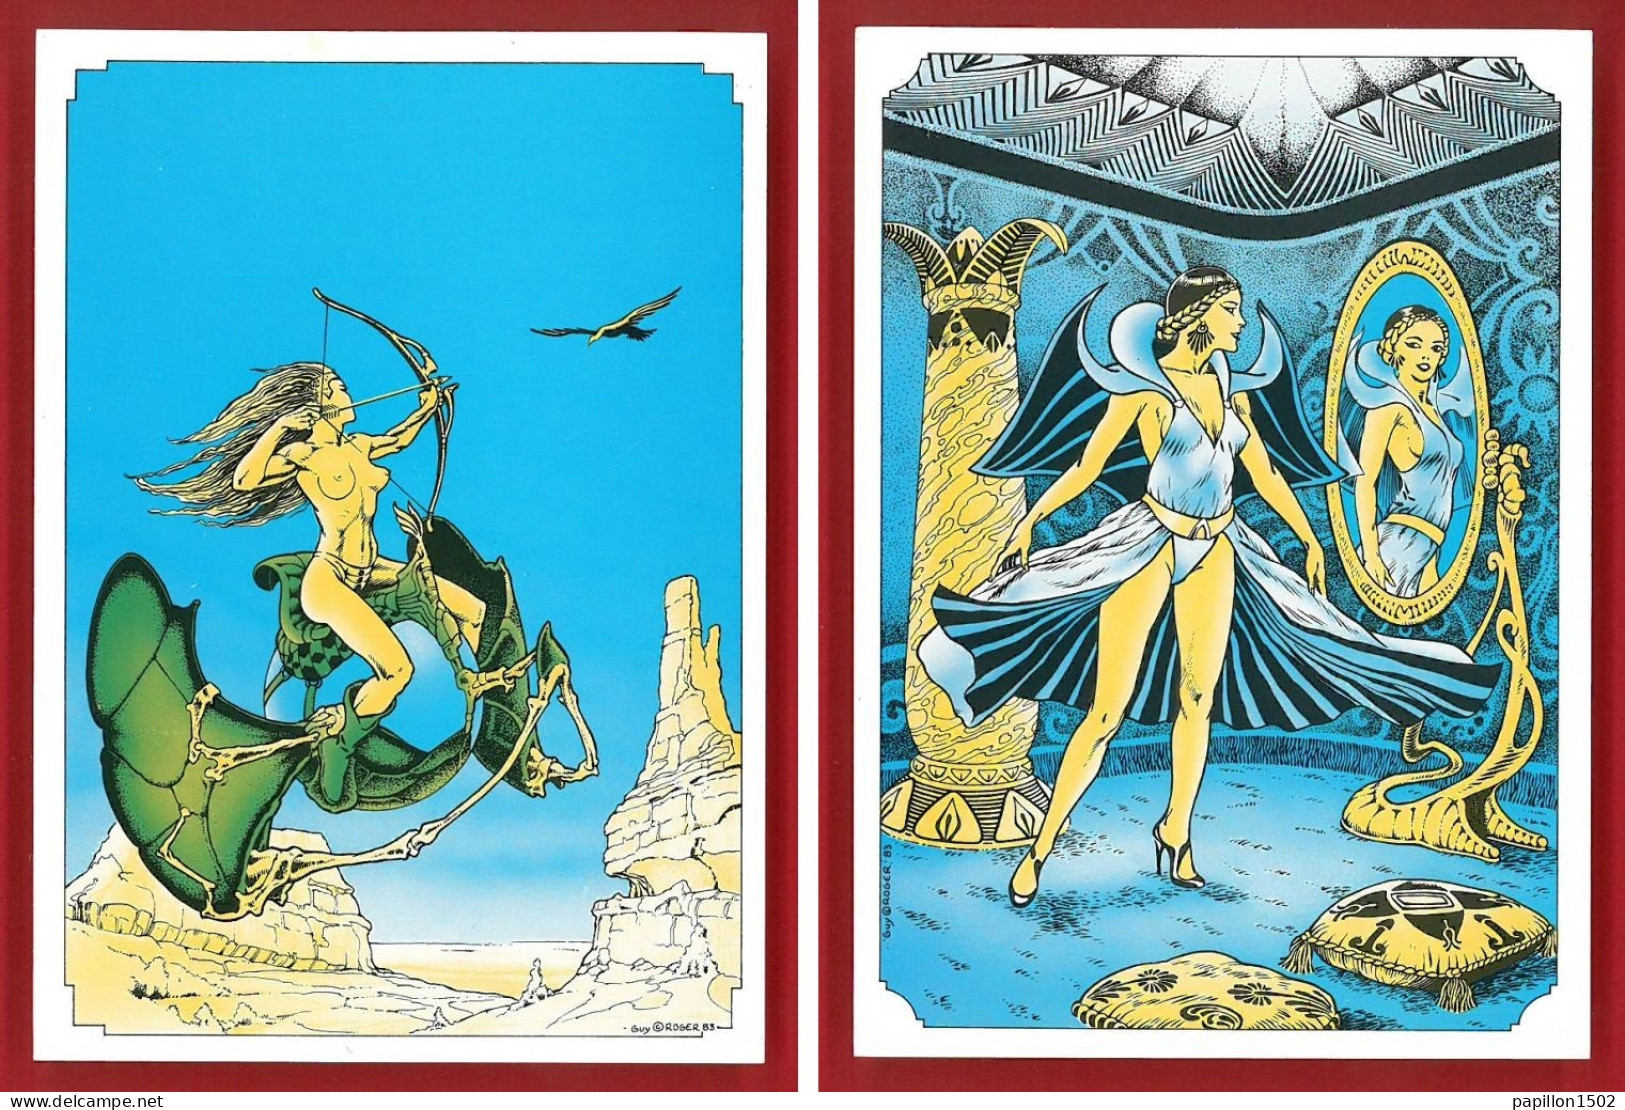 B.D.-92Ph59  Série De 6 Cartes Postales, Les Déesses Fantastiques, Collection Guy ROGER, BE - Stripverhalen